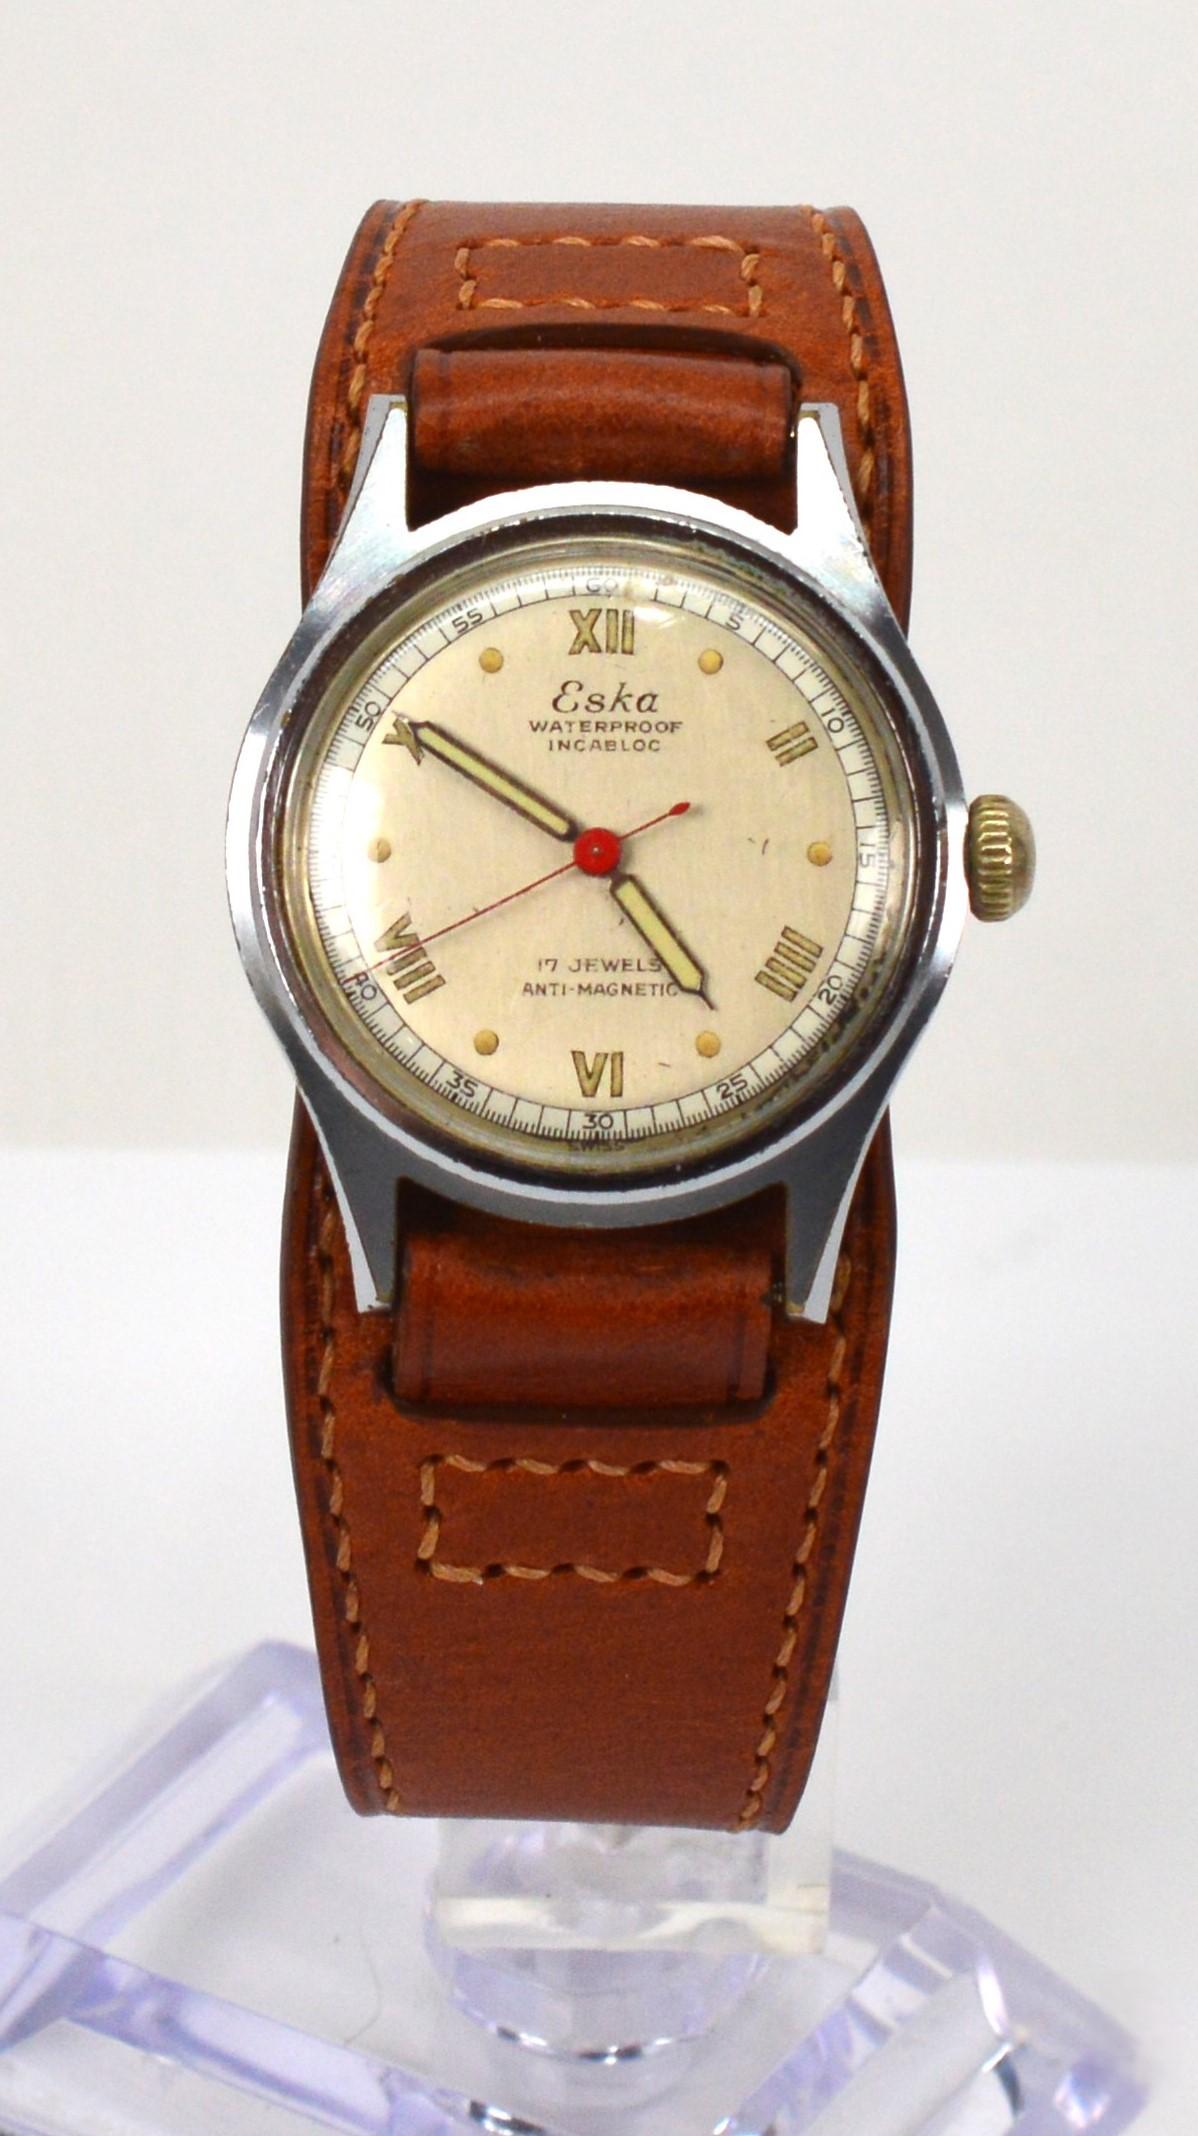 Ergänzen Sie Ihre Vintage-Sammlung mit dieser großartigen Schweizer Nachkriegs-Armbanduhr von Eska im Military-Stil. Diese 31-mm-Uhr aus gebürstetem Stahl hat ihr originales mattes silberfarbenes Zifferblatt mit römischen Ziffern, Indexen und einem